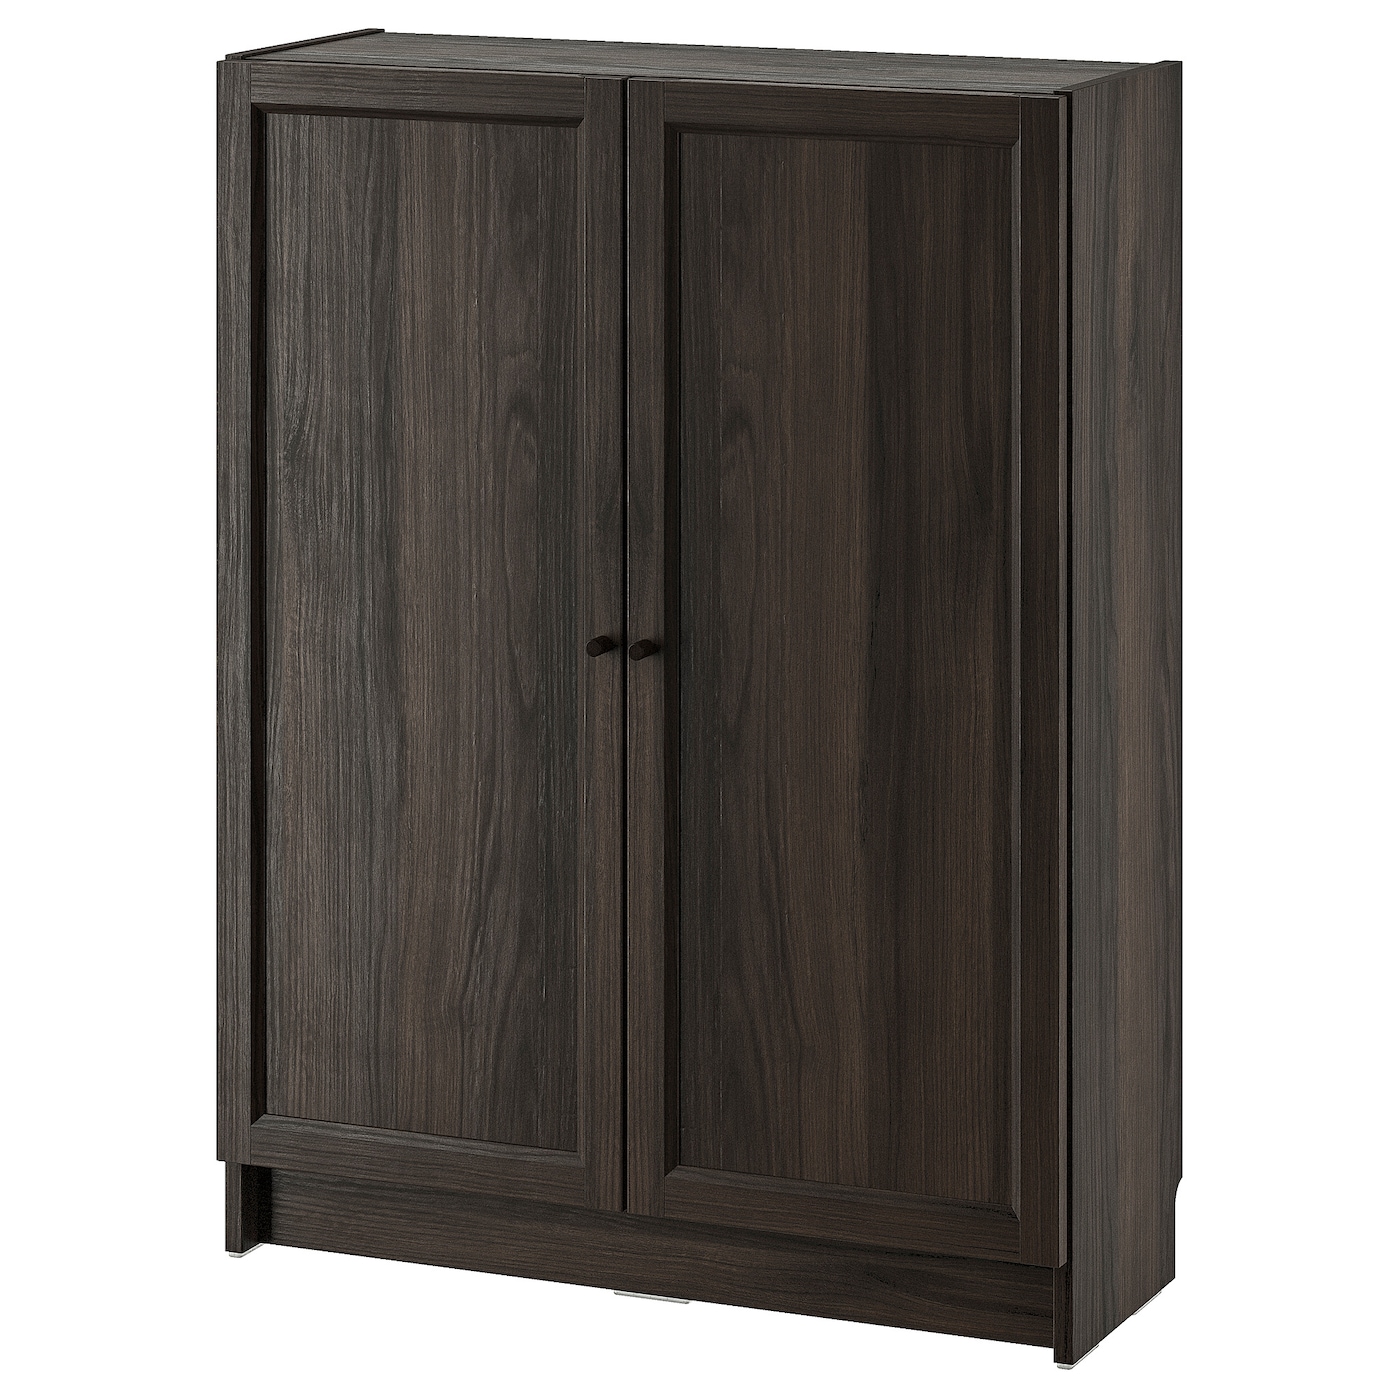 Книжный шкаф -  BILLY / OXBERG IKEA/ БИЛЛИ/ ОКСБЕРГ ИКЕА,80х30х106 см, коричневый